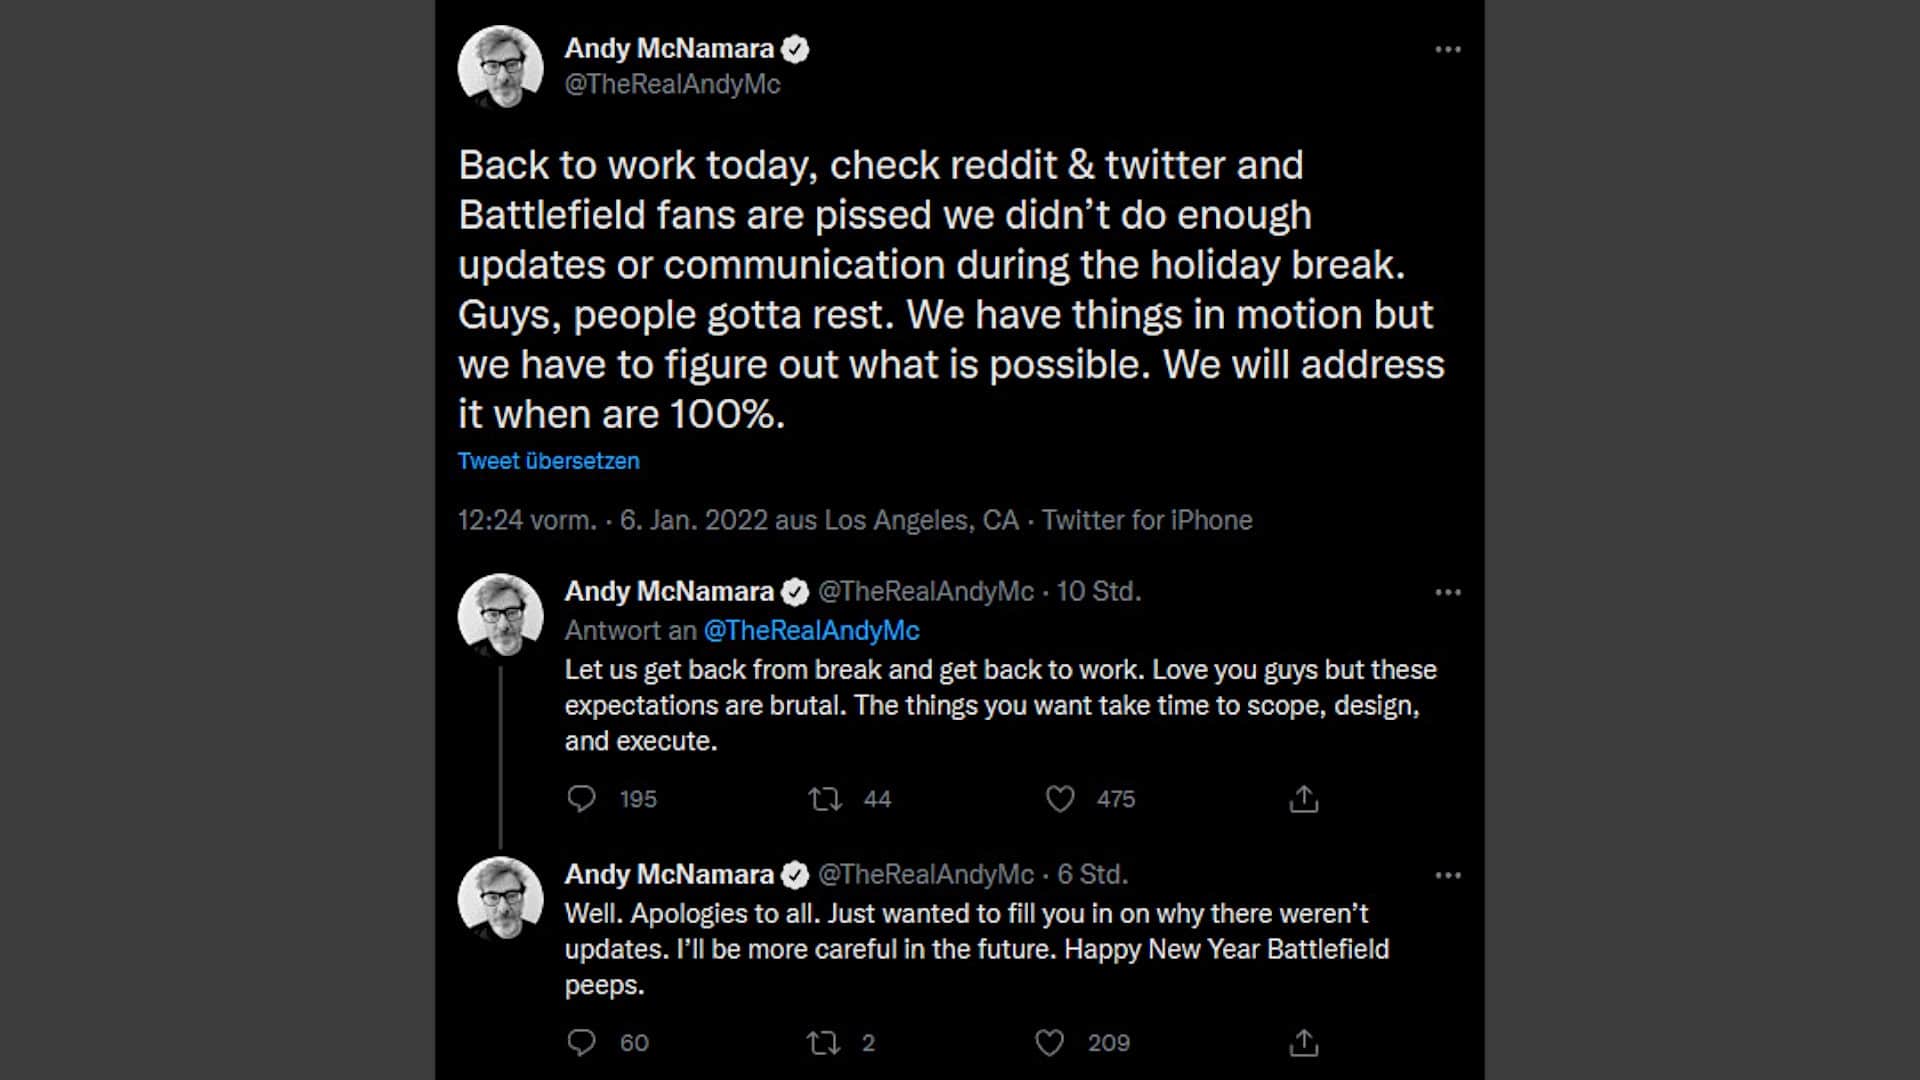 Энди Макнамара заставил фанатов Battlefield говорить об этом (теперь удаленном) твите.